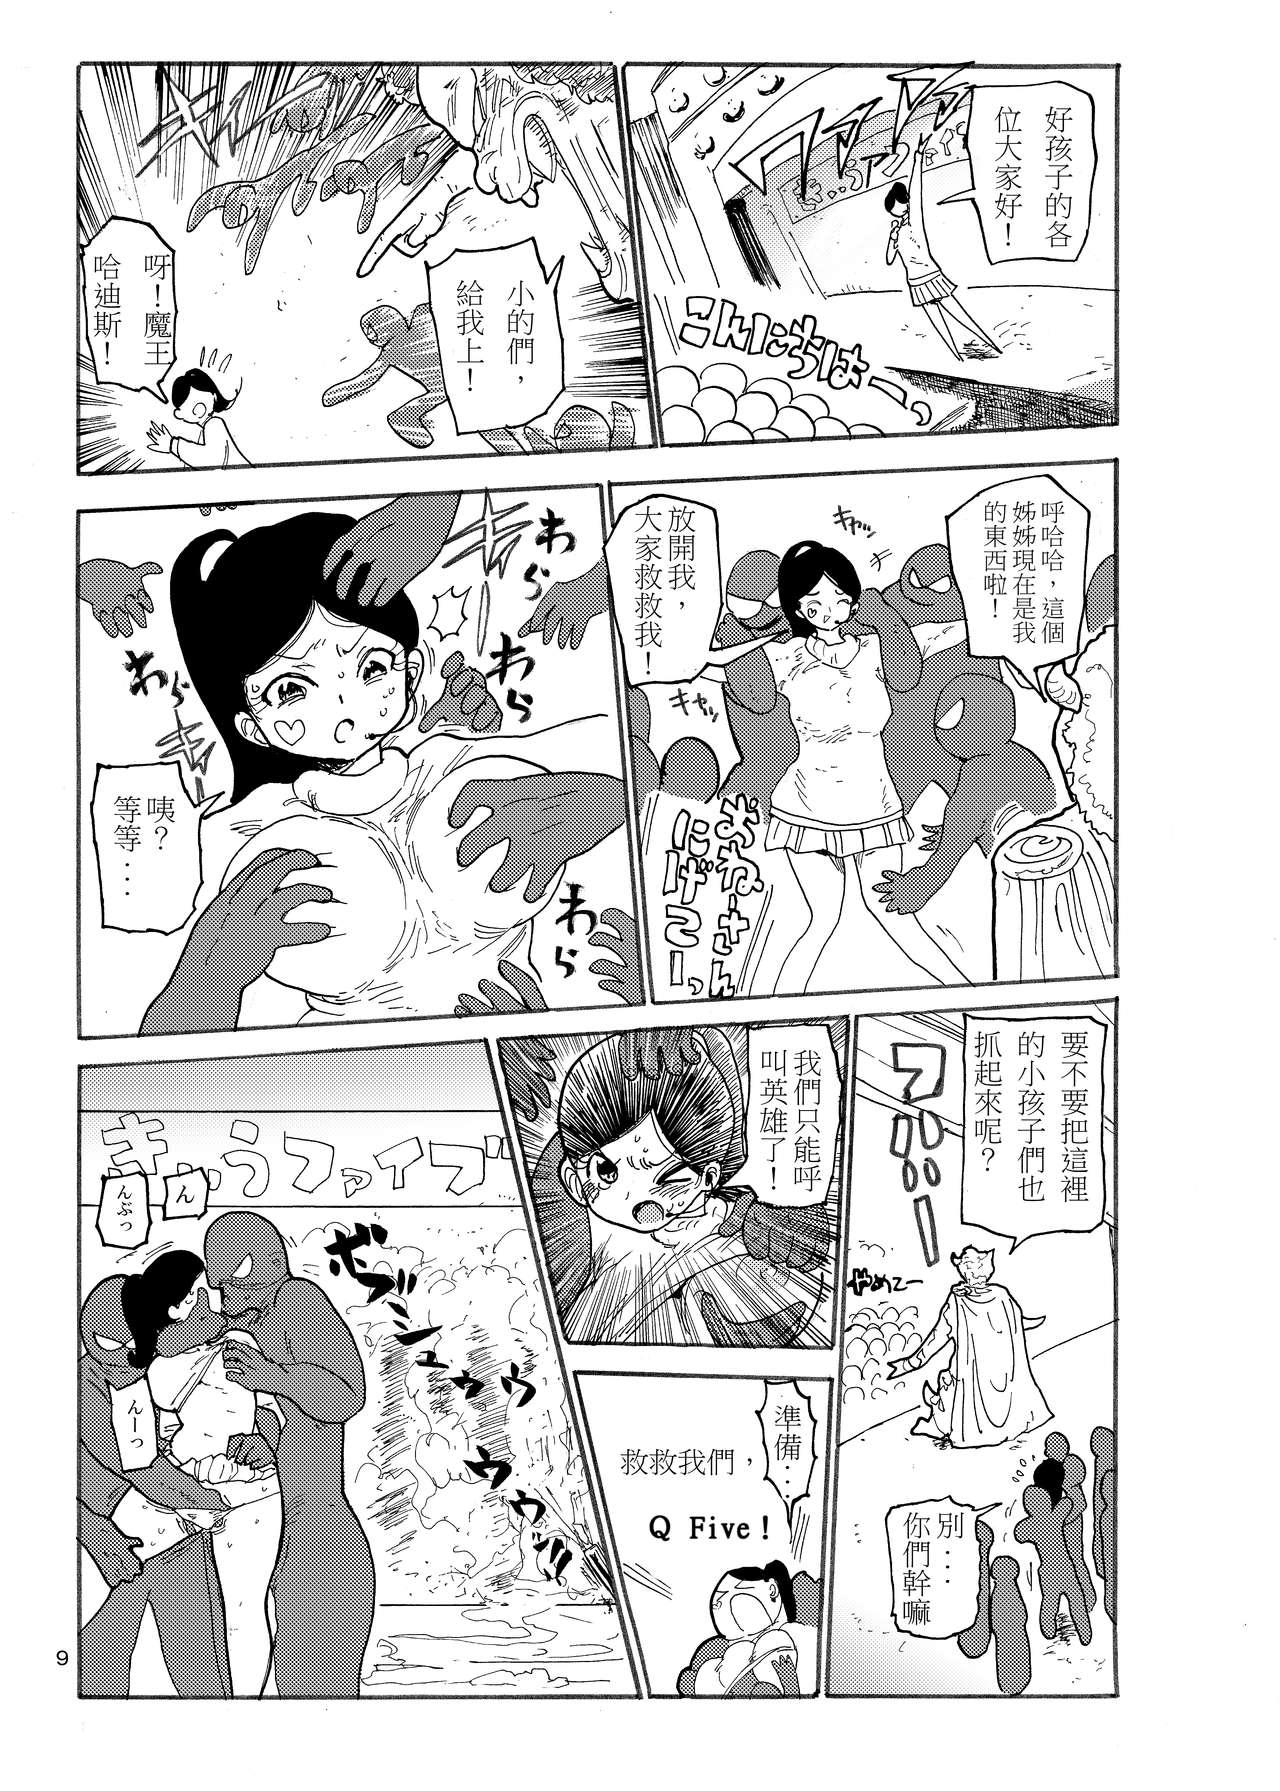 Groupsex Fuyu ni mo Nandemo Chousa Shoujo no Doujinshi ga Deta? Wakarimashita Chousa Shimasu - Original Fun - Page 9